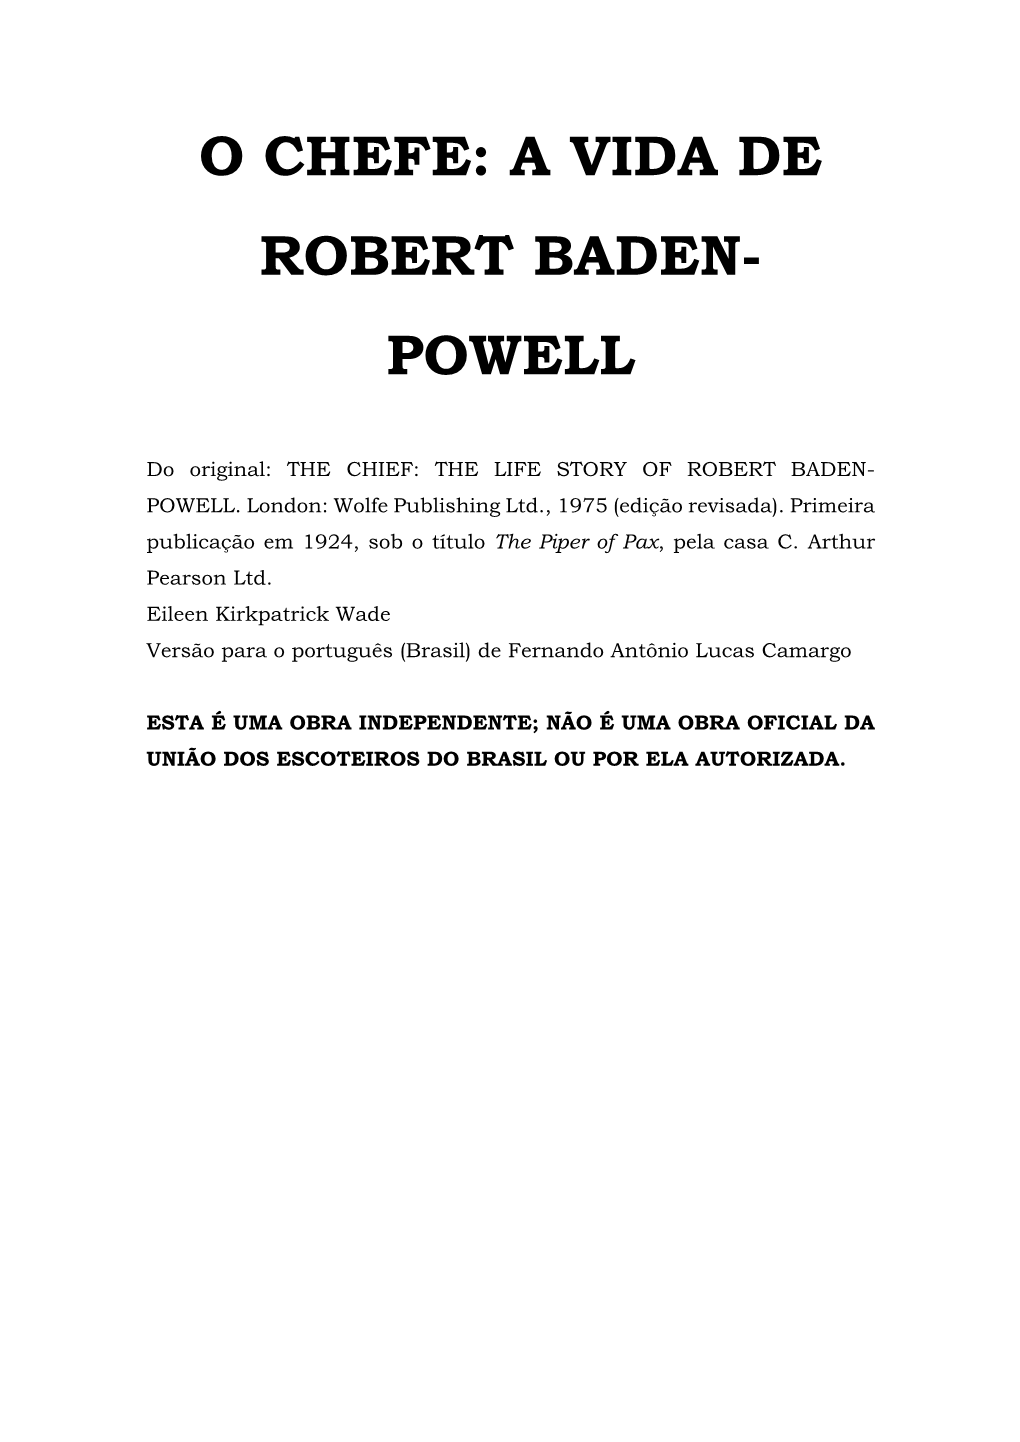 O Chefe: a Vida De Robert Baden- Powell